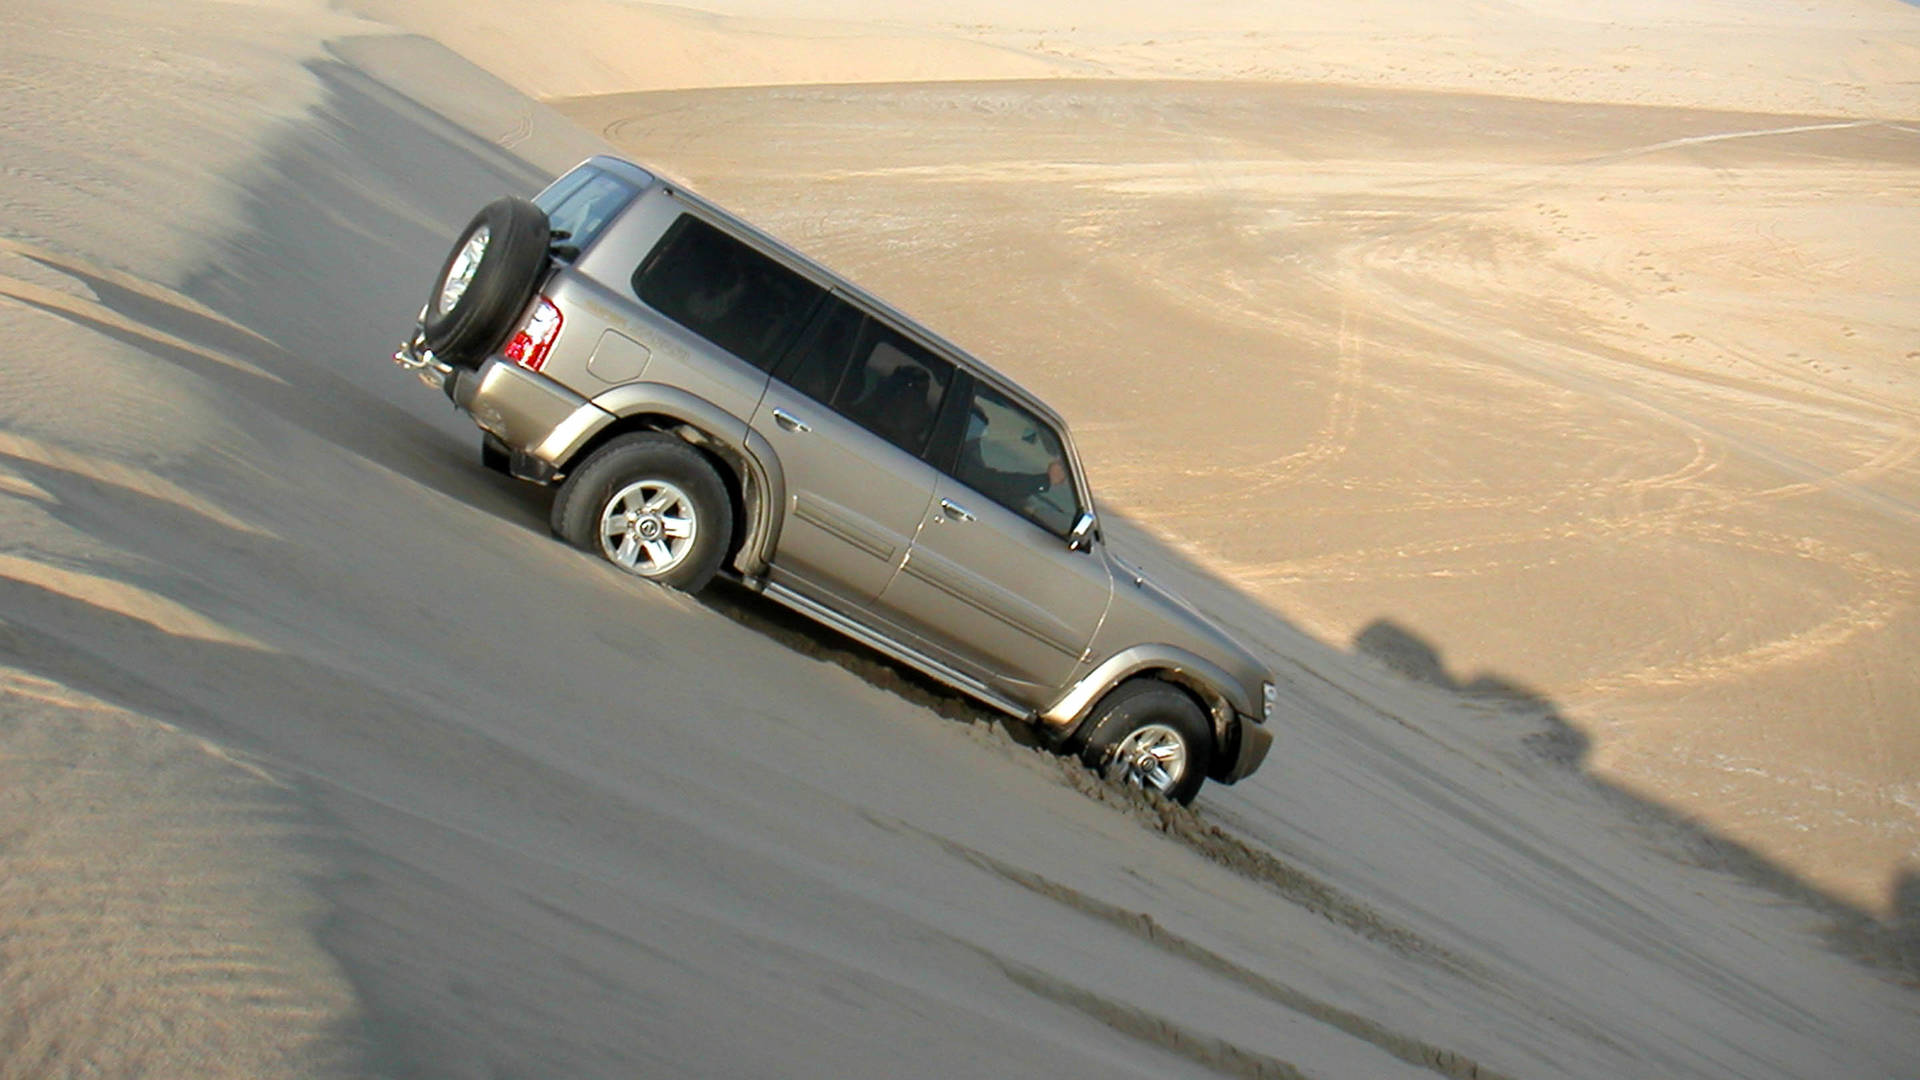 سيارة رباعية الدفع في زيارة لصحراء الربع الخالي في عُمان